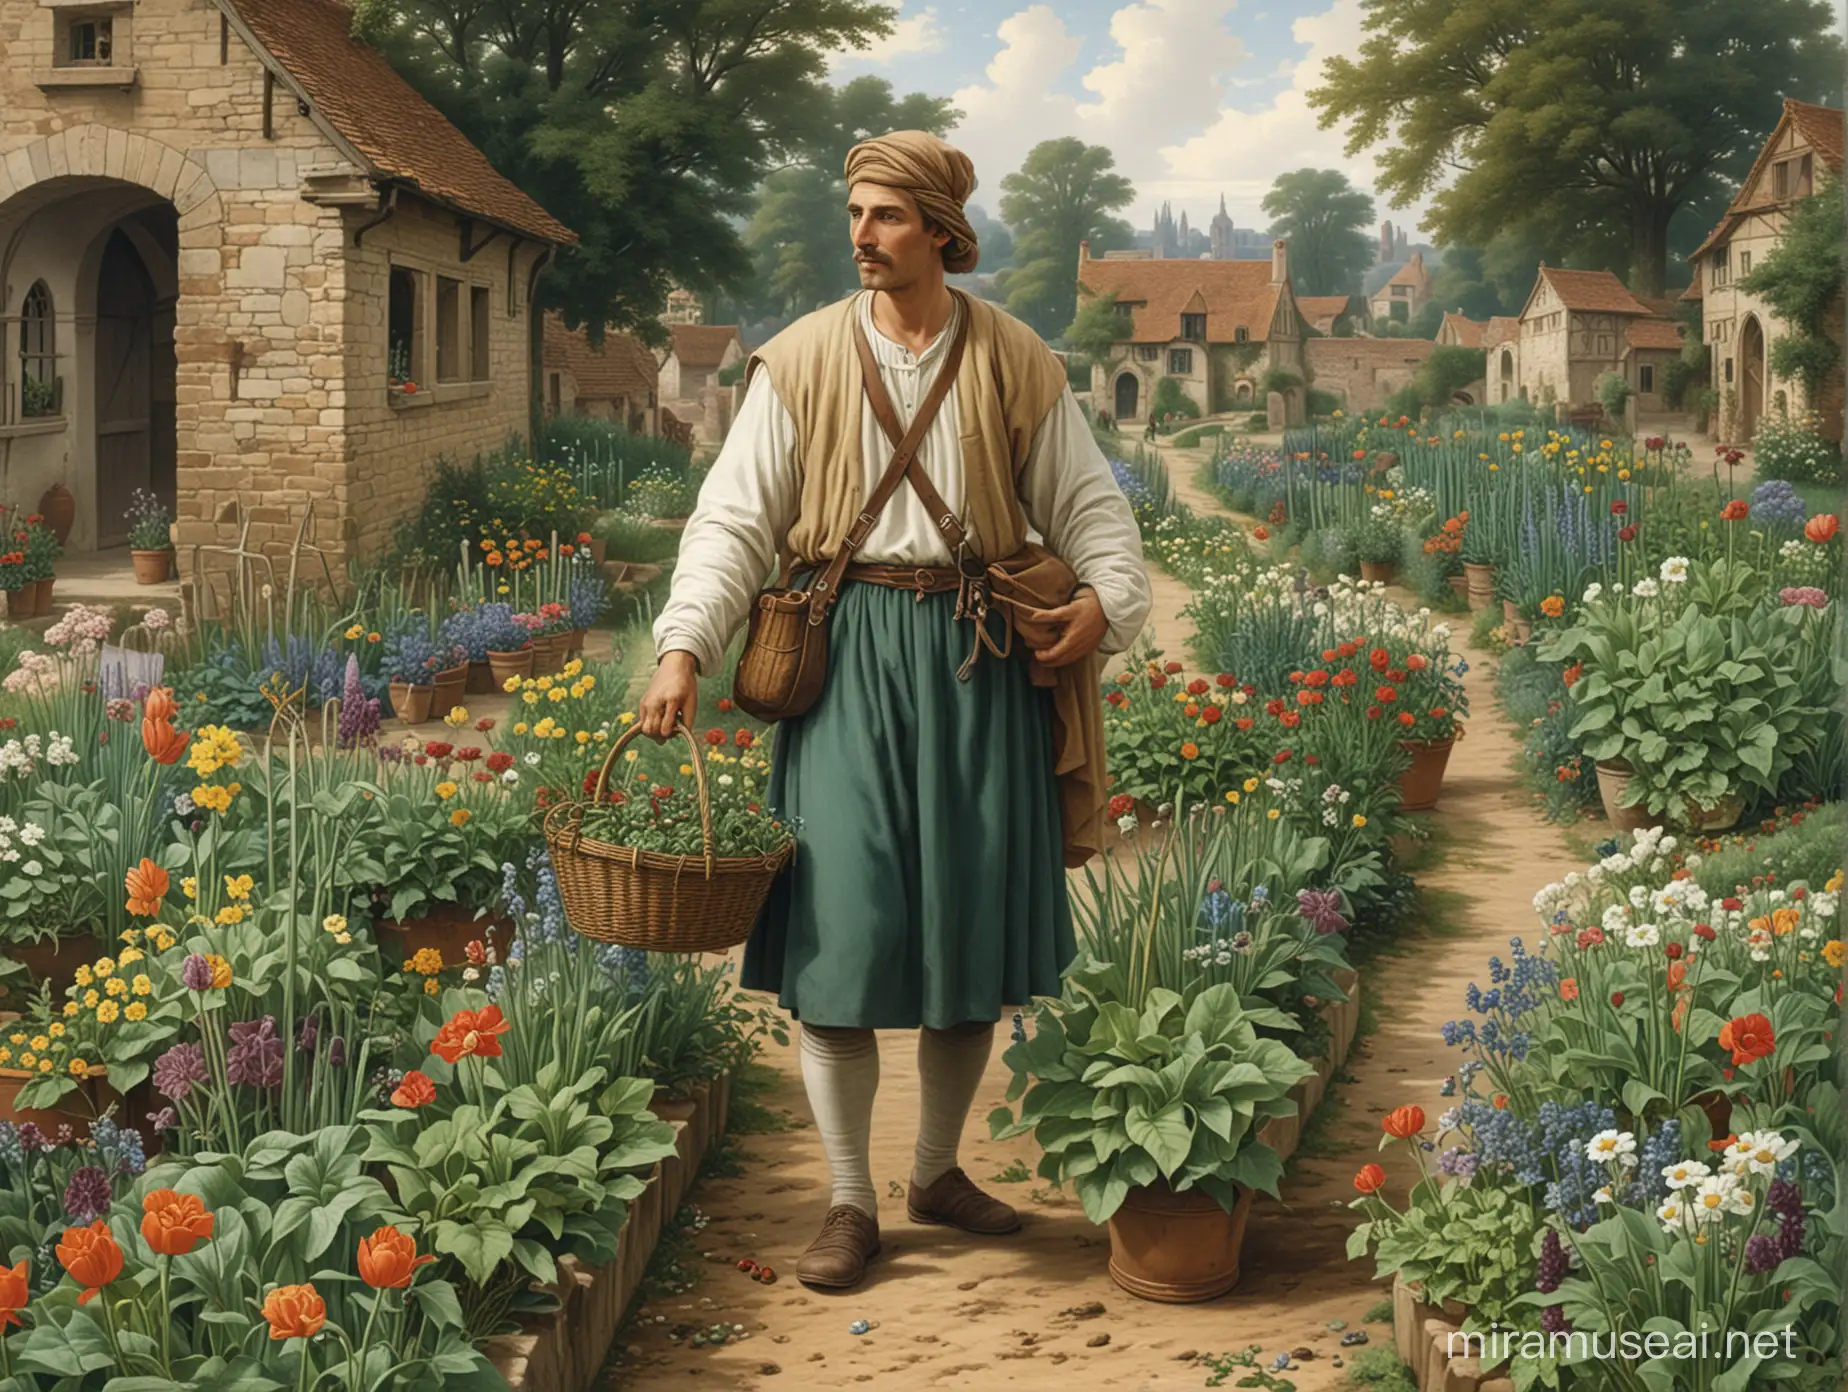 Merchant Gardener in 12th Century Medieval Market